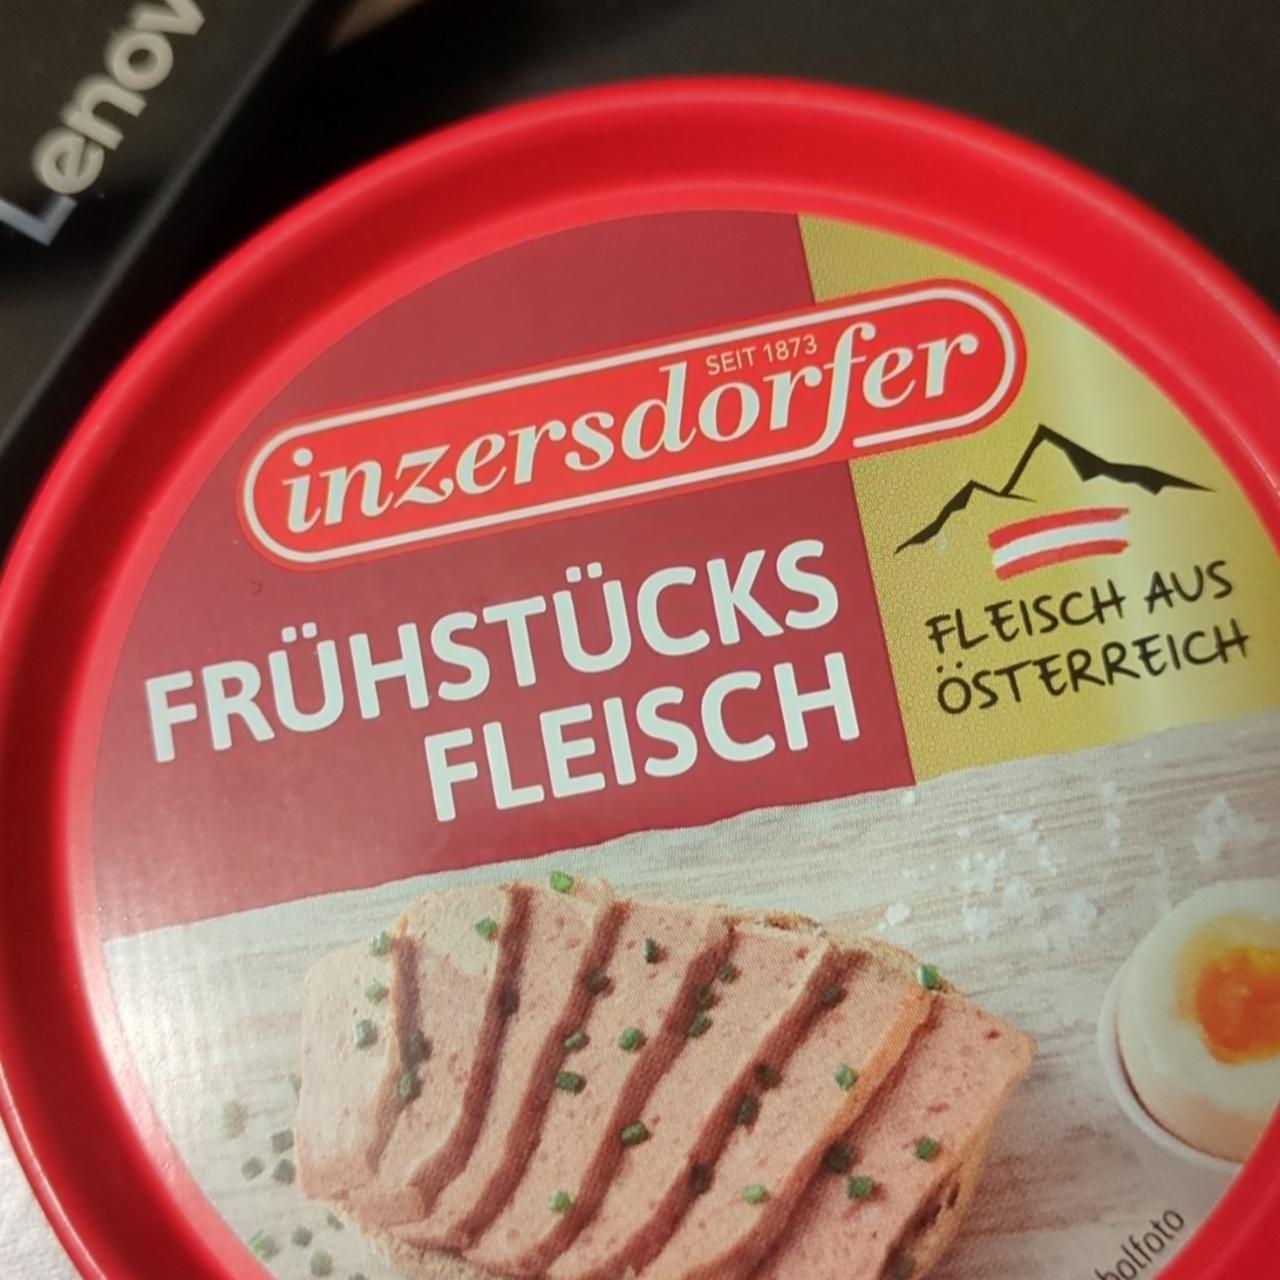 Fotografie - Frühstücks Fleisch inzersdorfer